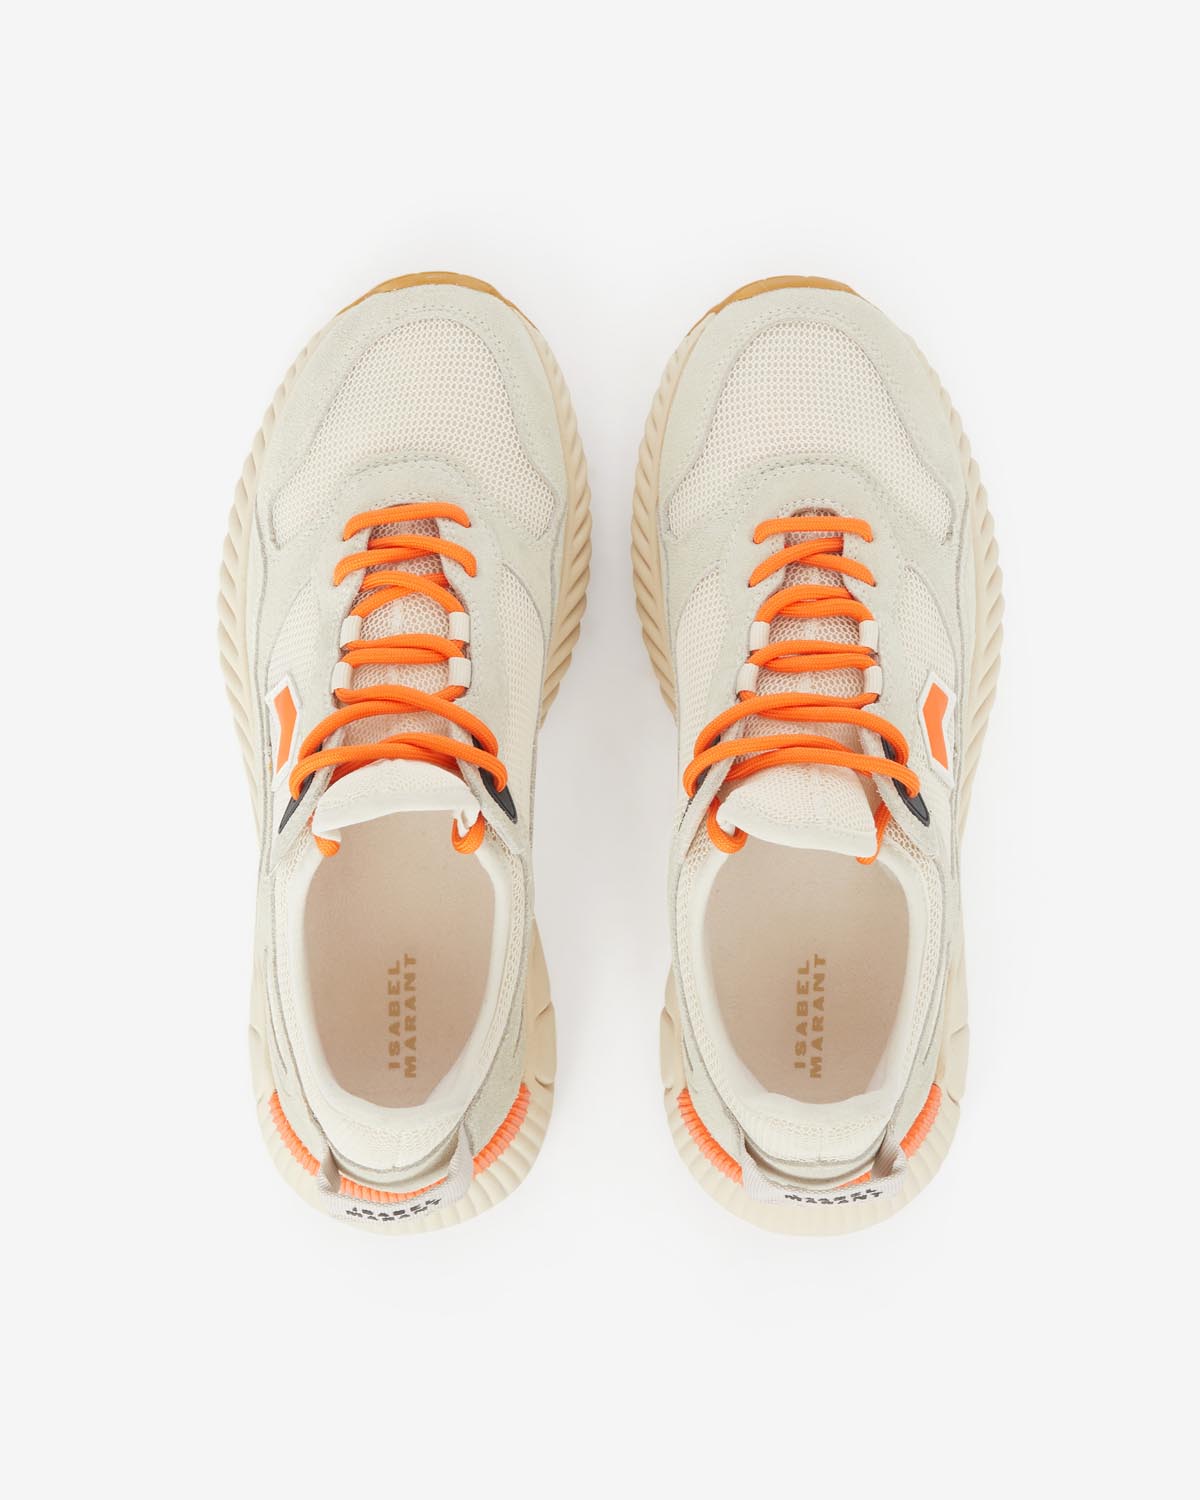 Ewie sneakers Woman Ecru-orange 1